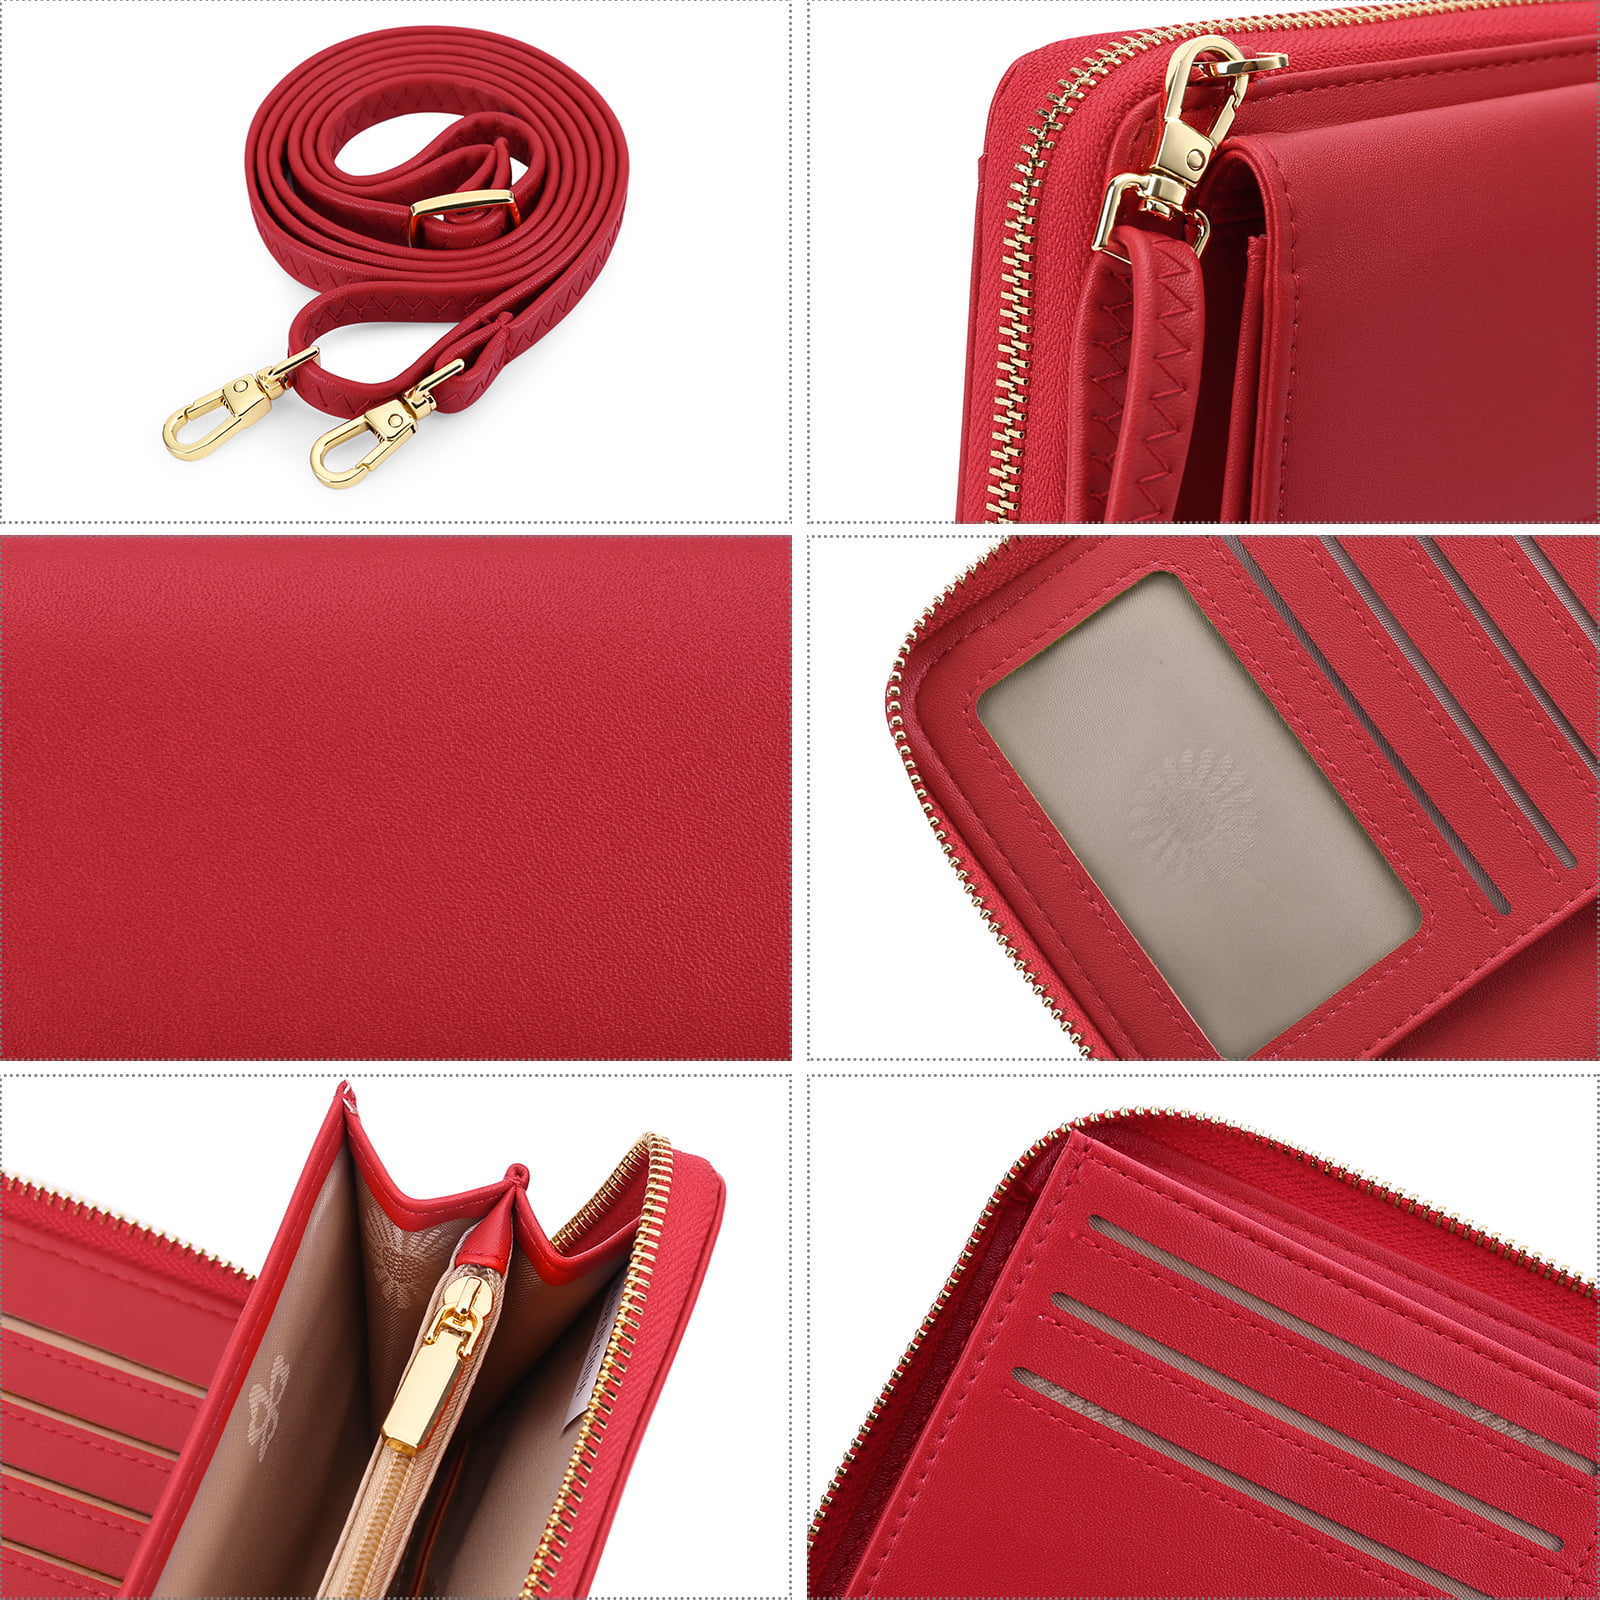 Kate Spade ♠️ small wallet/ change purse | Kate spade wallet small, Small  wallet, Change purse